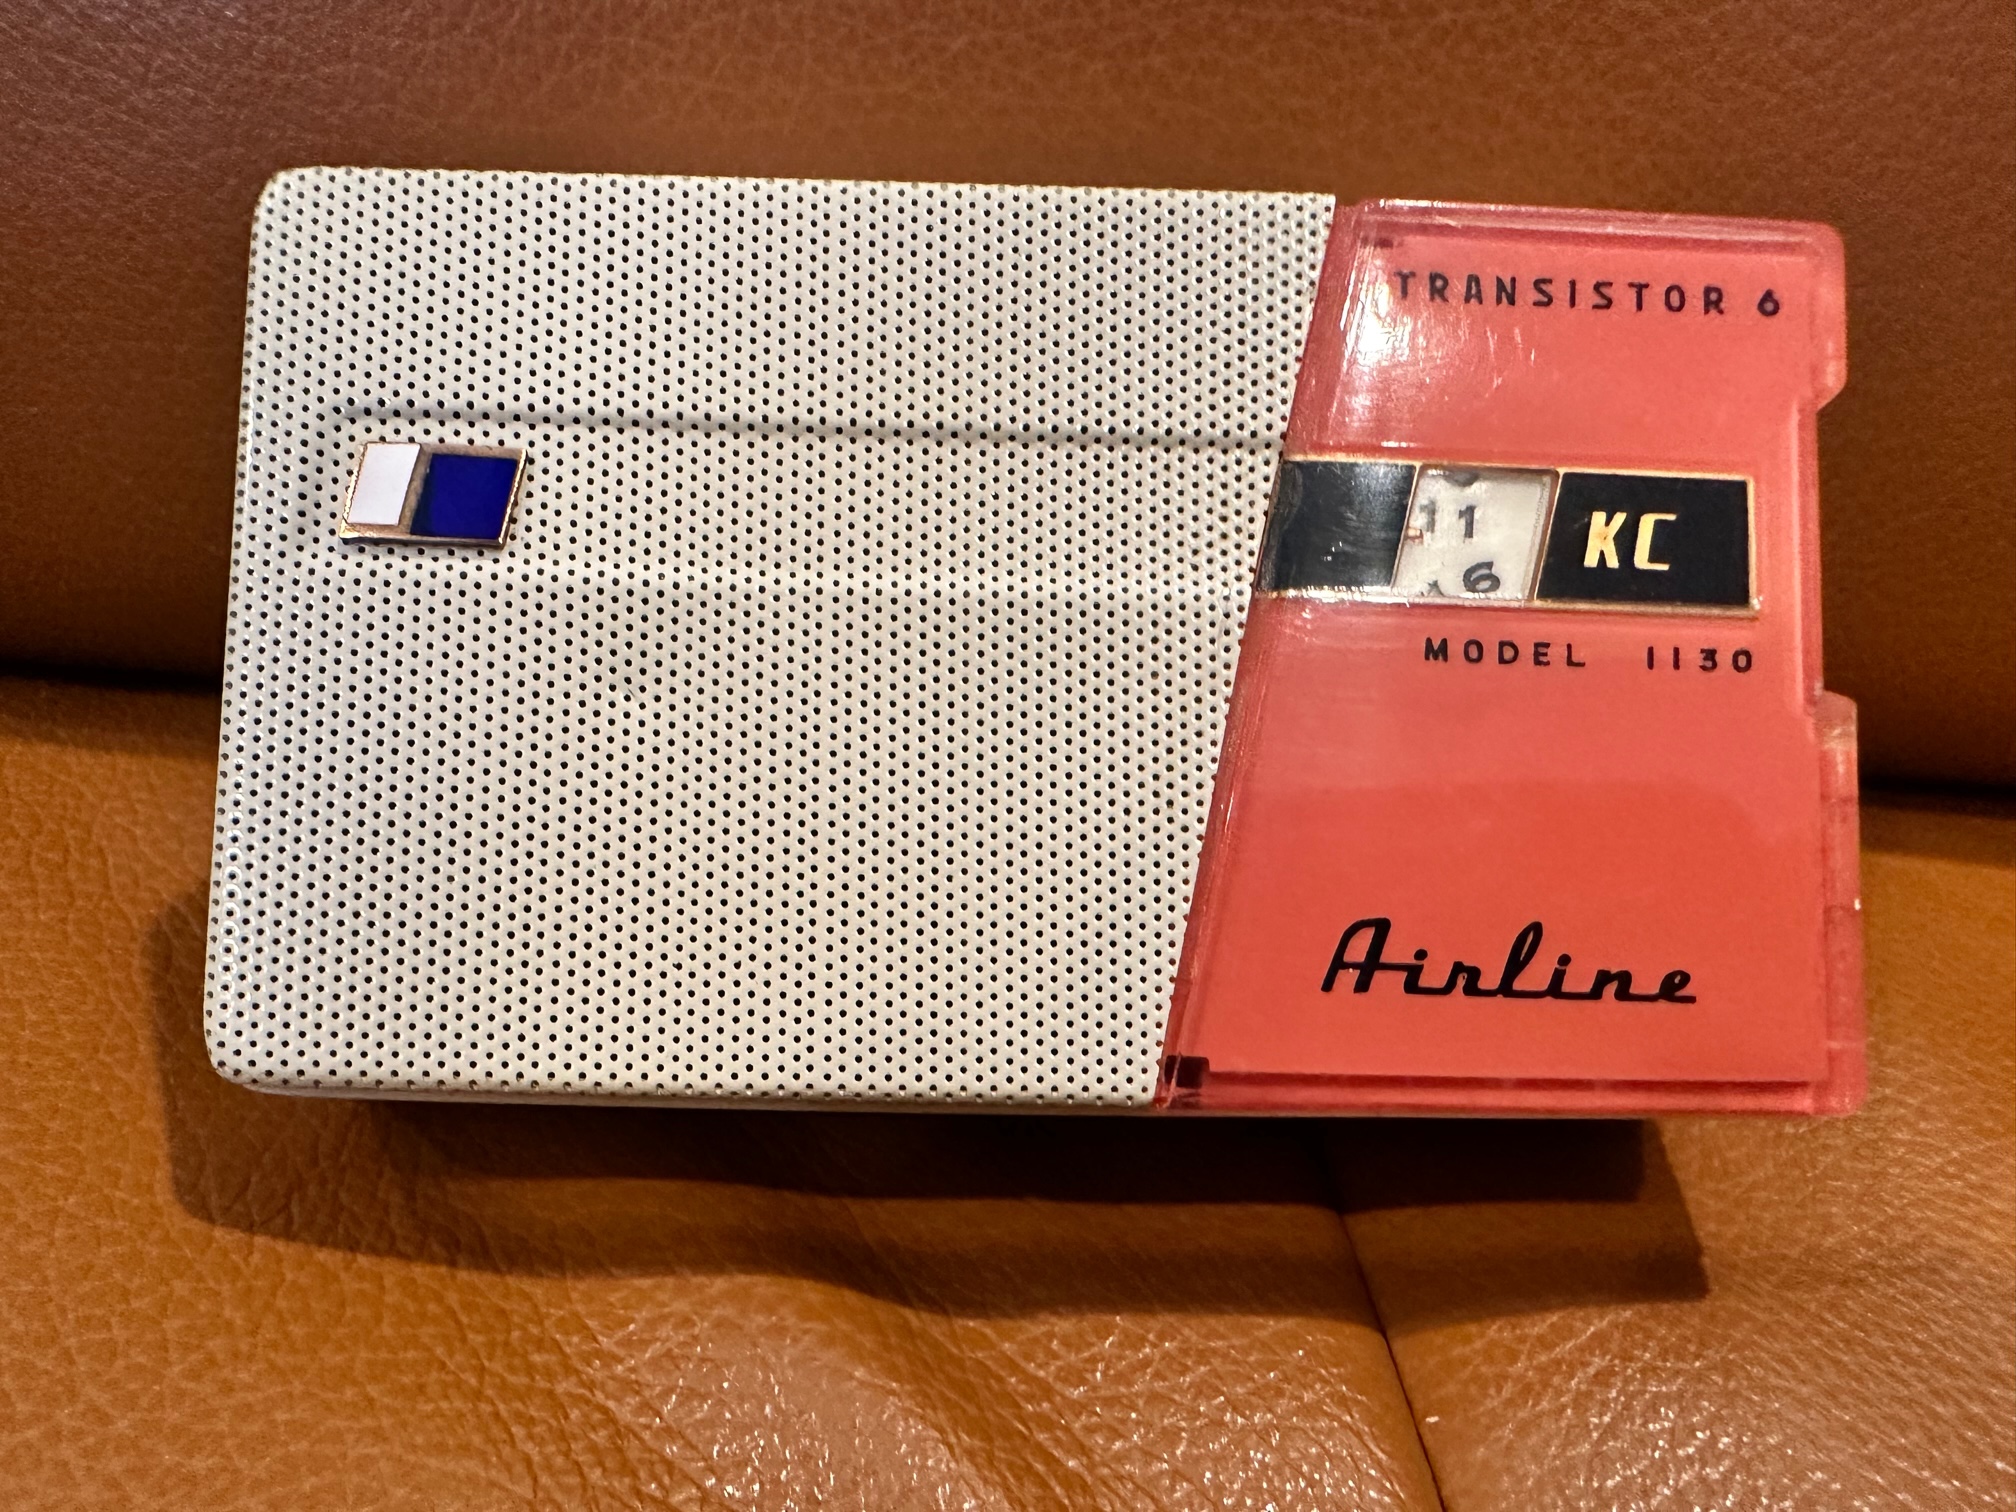 Transistor de radio modelo T81 BKG de Philco, 1963 en venta en Pamono